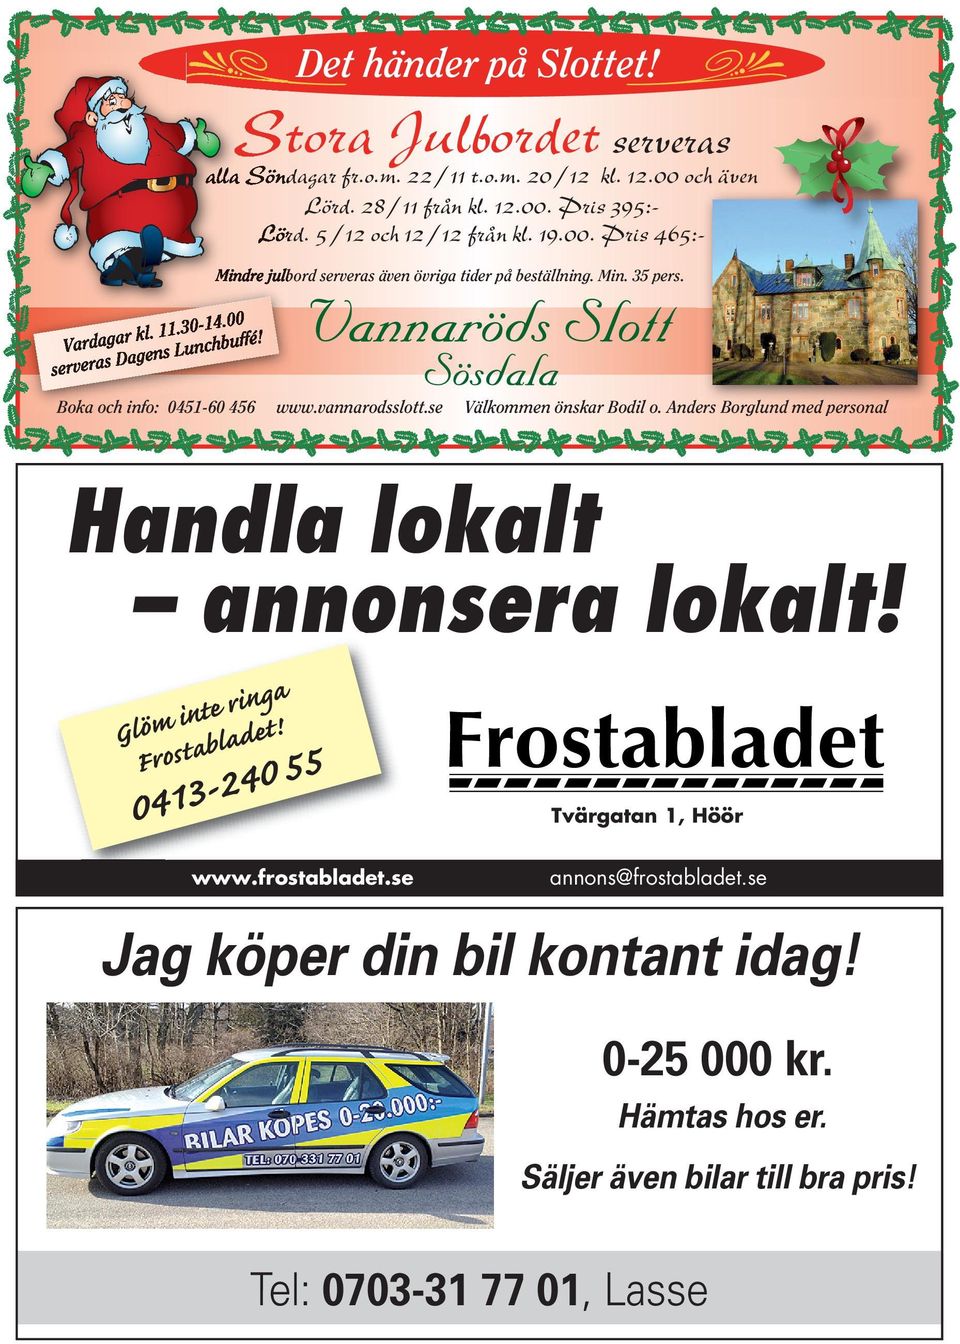 Dg servers Bok och info: 5-6 56 www.vnnrodsslott.se Välkommen önskr Bodil o. Anders Borglund med personl Hndl loklt nnonser loklt!